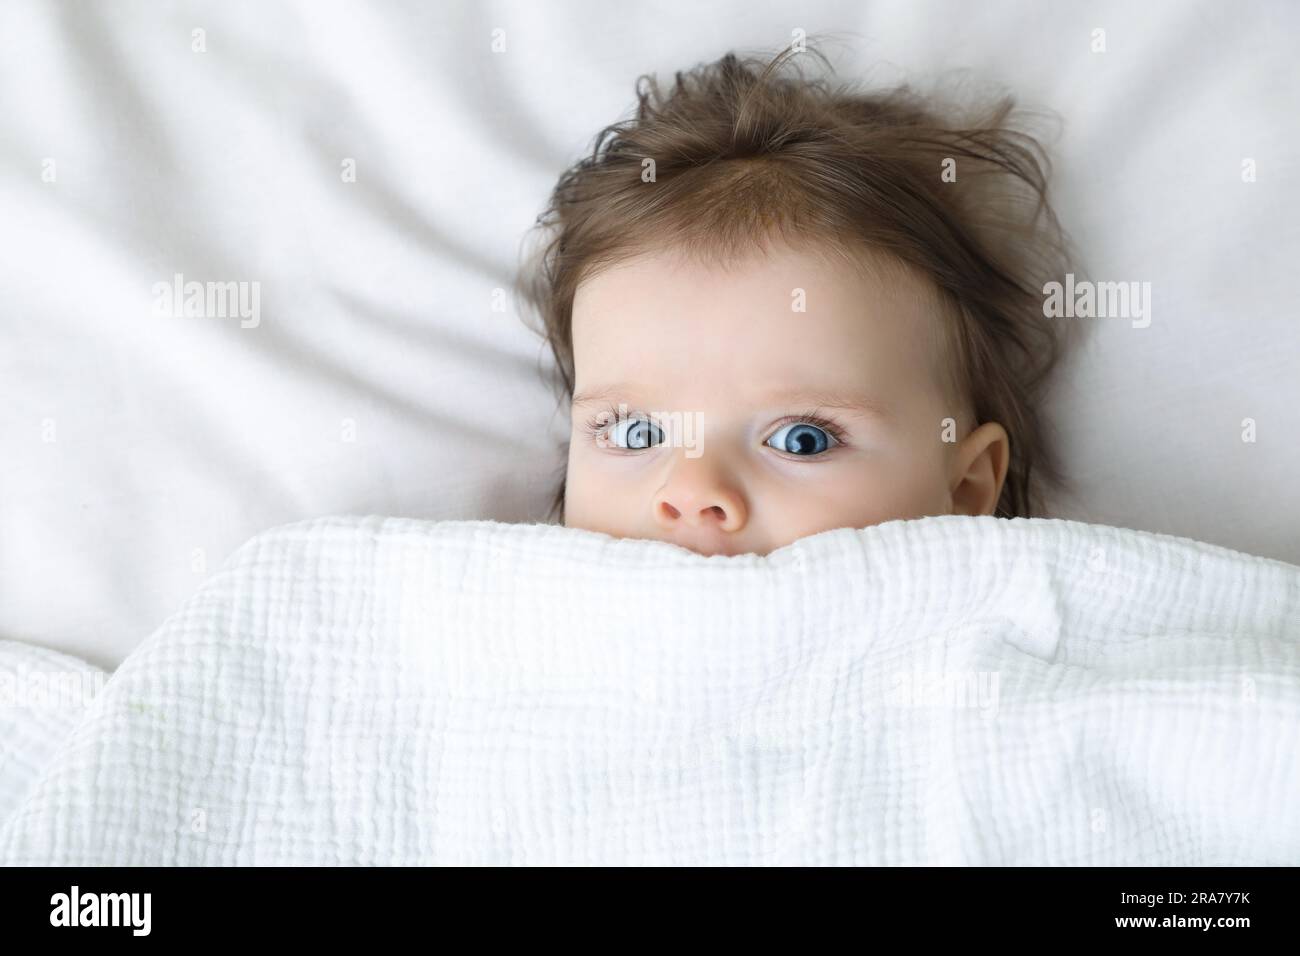 Süßes kleines Baby, das unter einer Decke auf einem weichen Bett liegt, Blick von oben Stockfoto